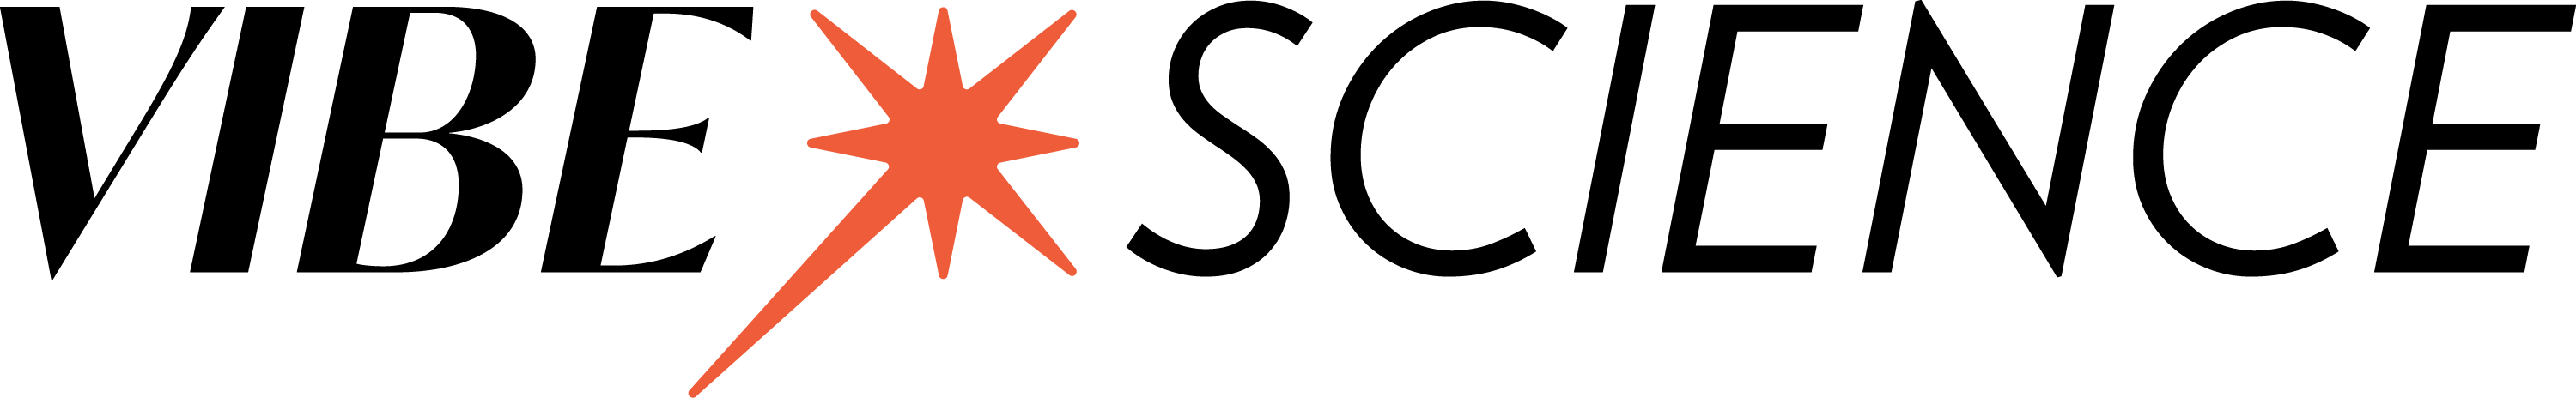 Vibe Science Logo Black